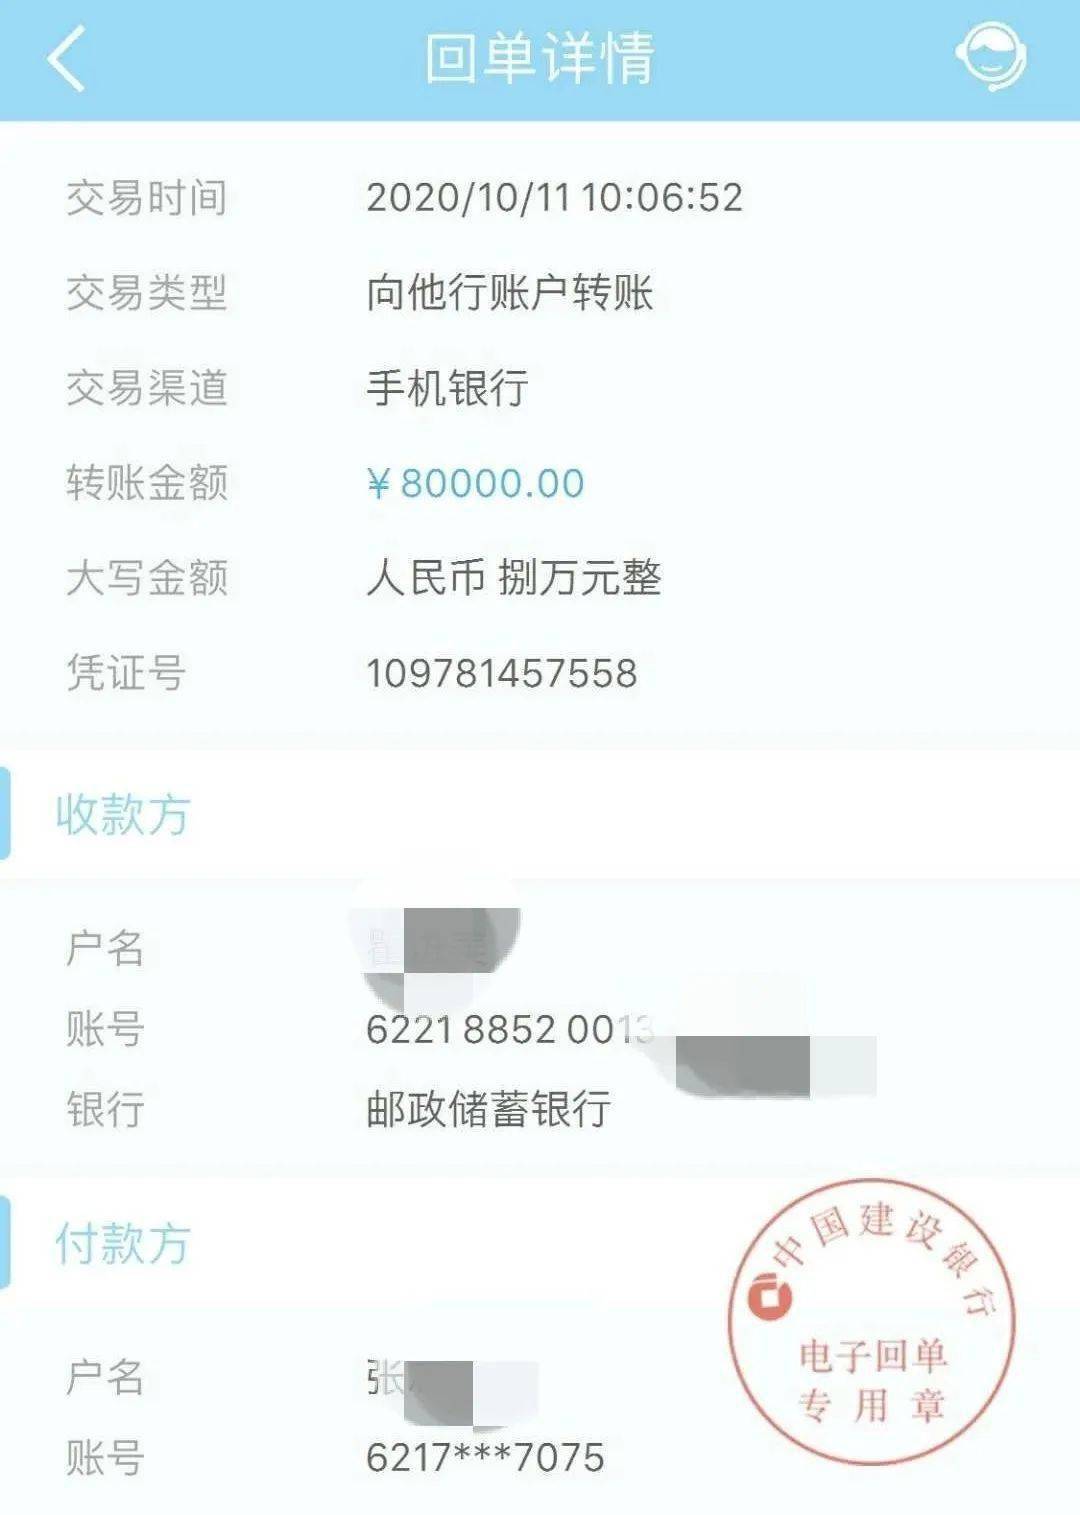 今日上午,利川一村干部收到了8万元的转账单,殊不知